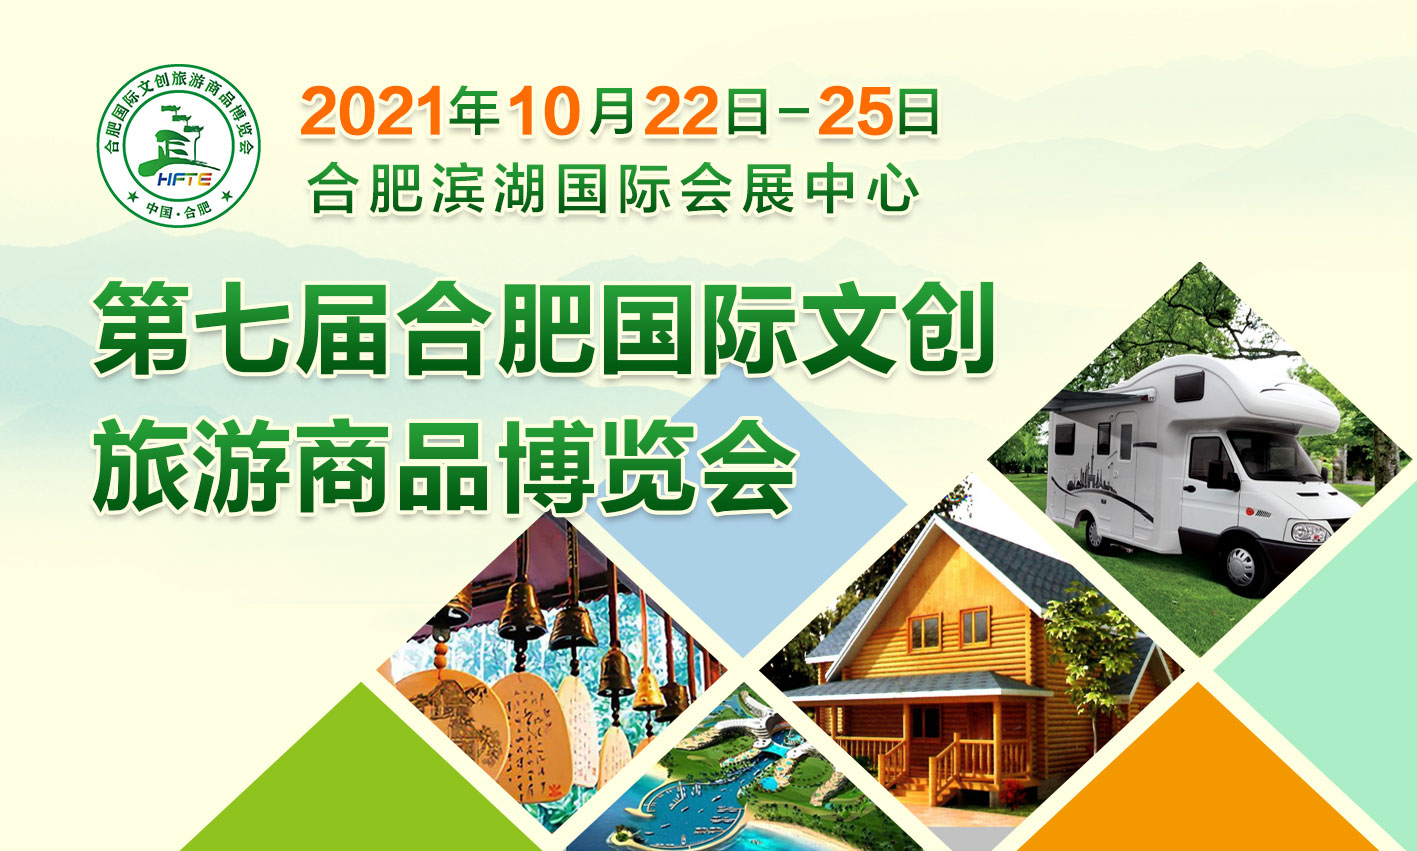 2021第七届合肥国际文创旅游商品博览会(合肥旅博会)